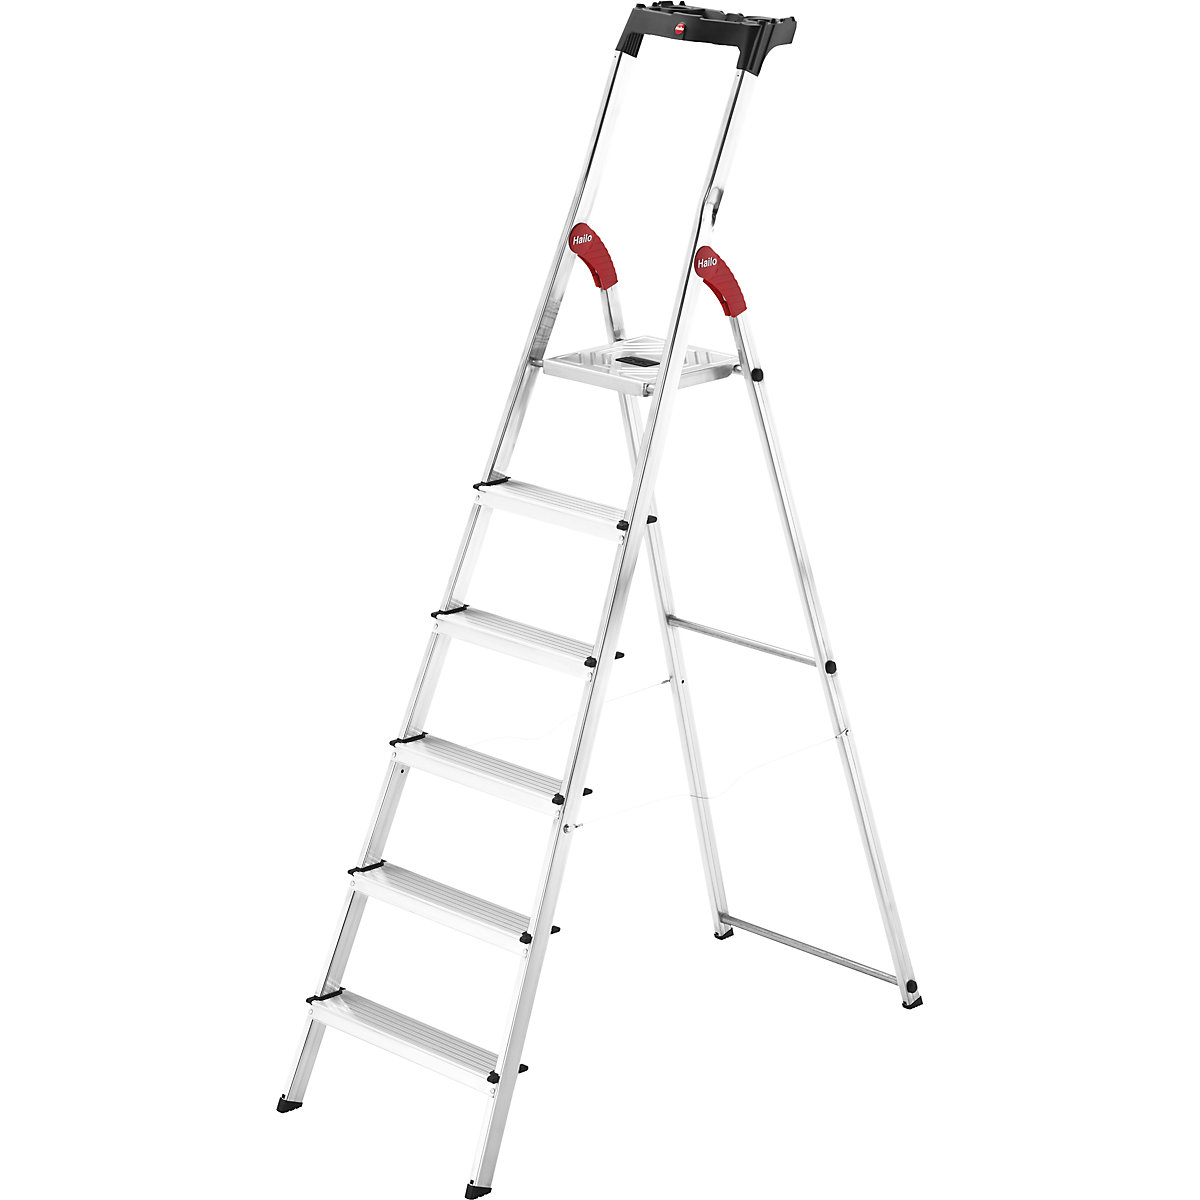 Aluminijasta dvokraka lestev s stopnicami StandardLine L60 – Hailo, nosilnost 150 kg, 6 stopnic